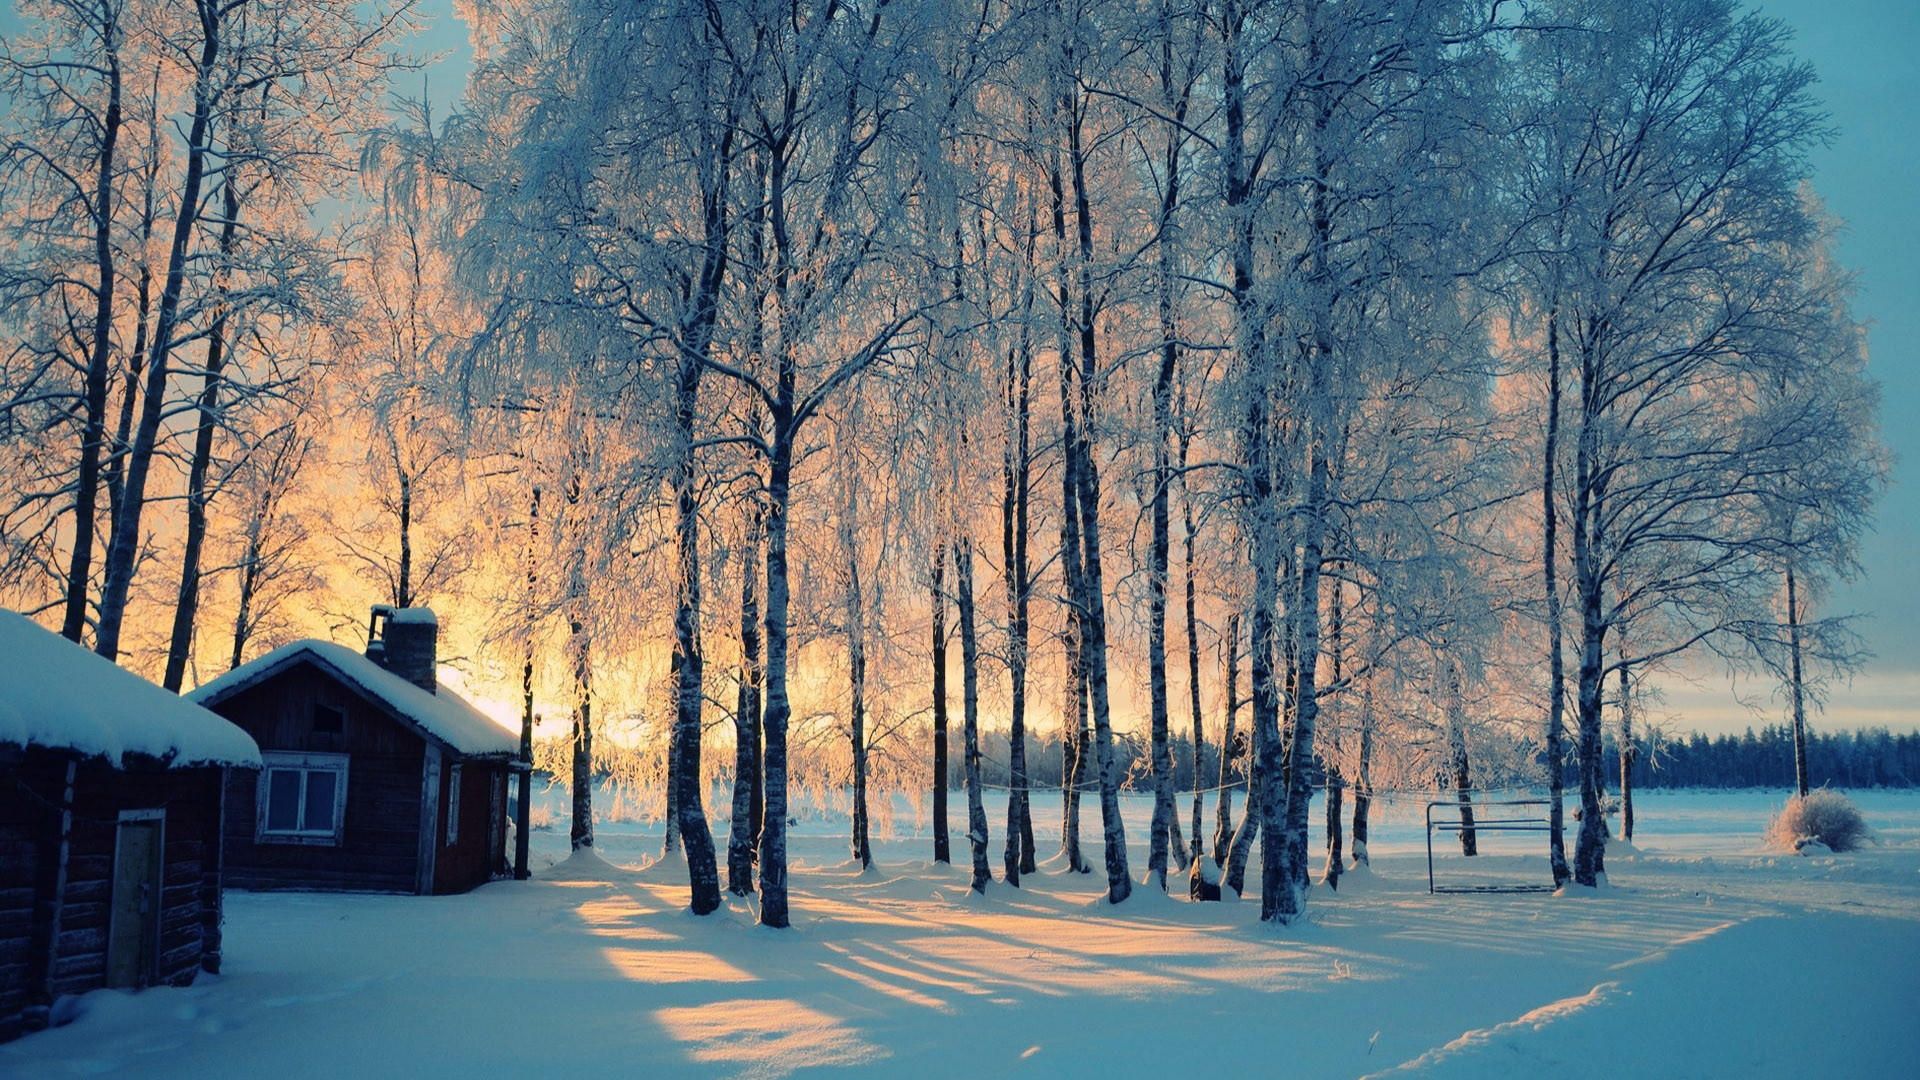 Tải hình nền miễn phí, với cảnh tuyết phủ kín chắc chắn sẽ mang lại cho bạn cảm giác đẹp và thư giãn. Không phải lo ngại về giá cả, chỉ cần một vài cú click là bạn có thể sở hữu được một bức ảnh tuyệt đẹp cho mùa đông.